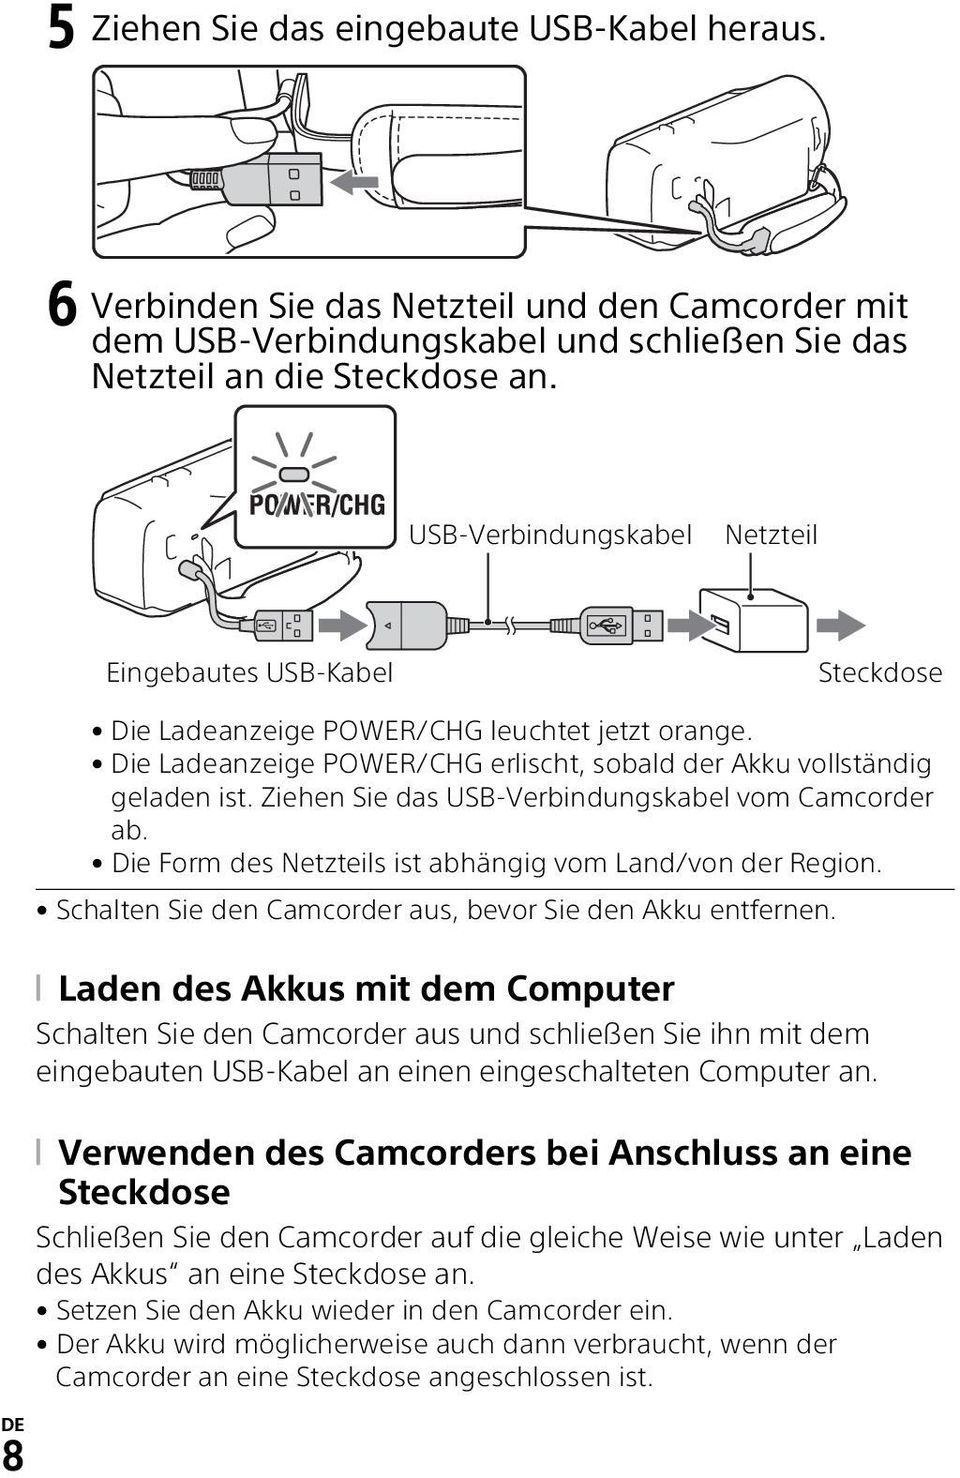 Ziehen Sie das USB-Verbindungskabel vom Camcorder ab. Die Form des Netzteils ist abhängig vom Land/von der Region. Schalten Sie den Camcorder aus, bevor Sie den Akku entfernen.